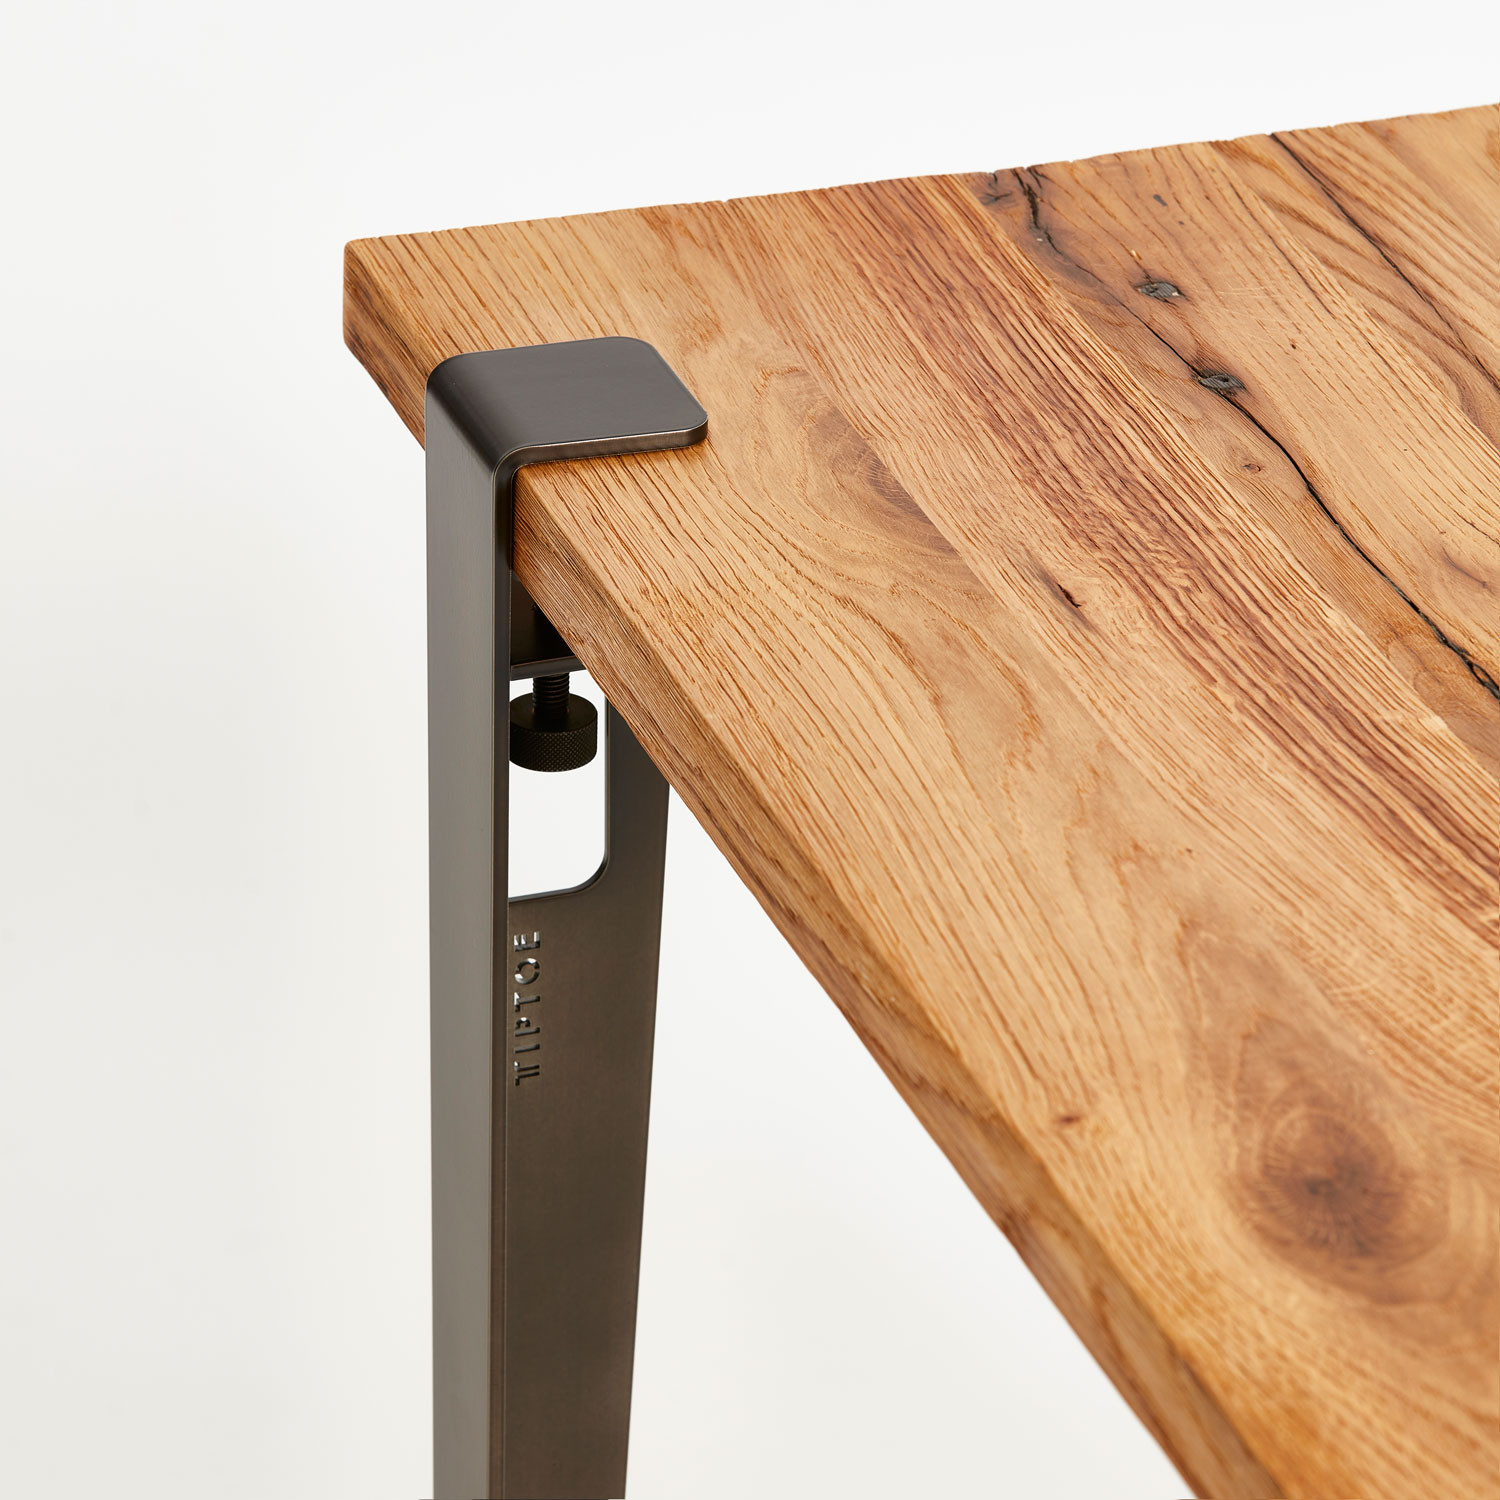 Steel leg for custom-made dining table or desk